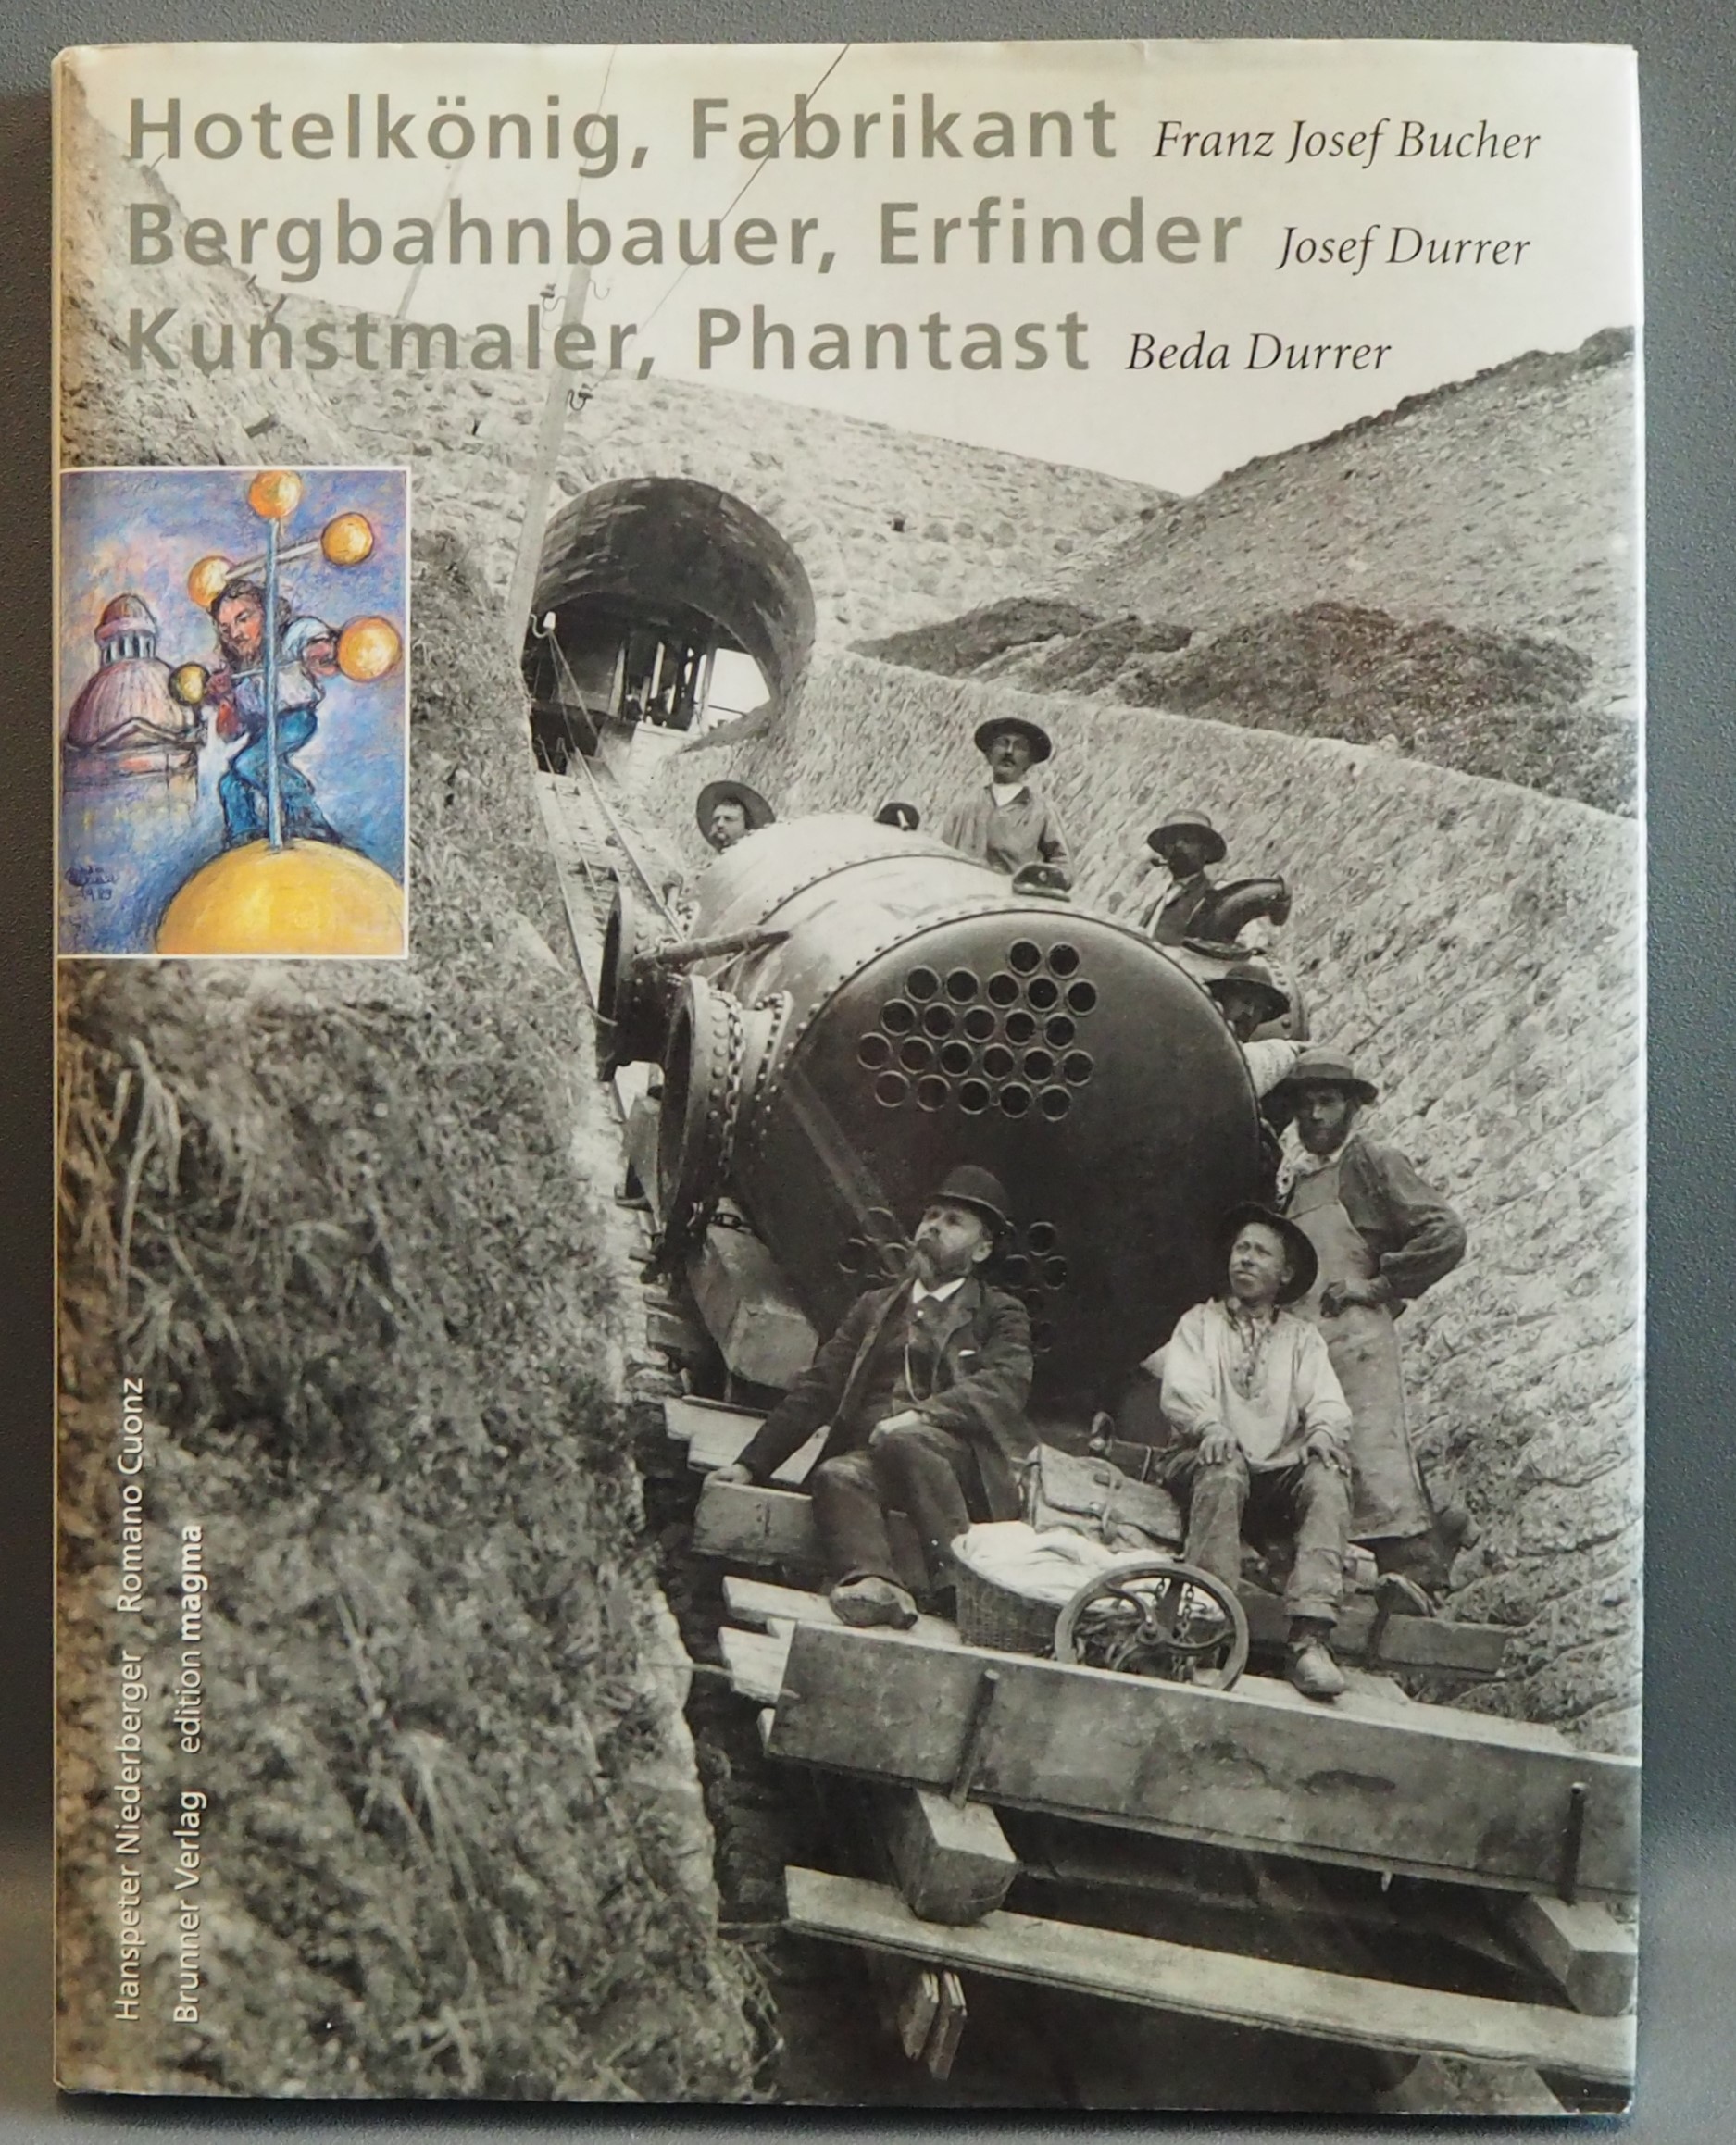 Franz Josef Bucher: Hotelkönig, Fabrikant. Josef Durrer: Bergbahnbauer, Erfinder. Beda Durrer: Kunstmaler, Phantast. - Cuonz, Romano u. Hanspeter Niederberger (Text)